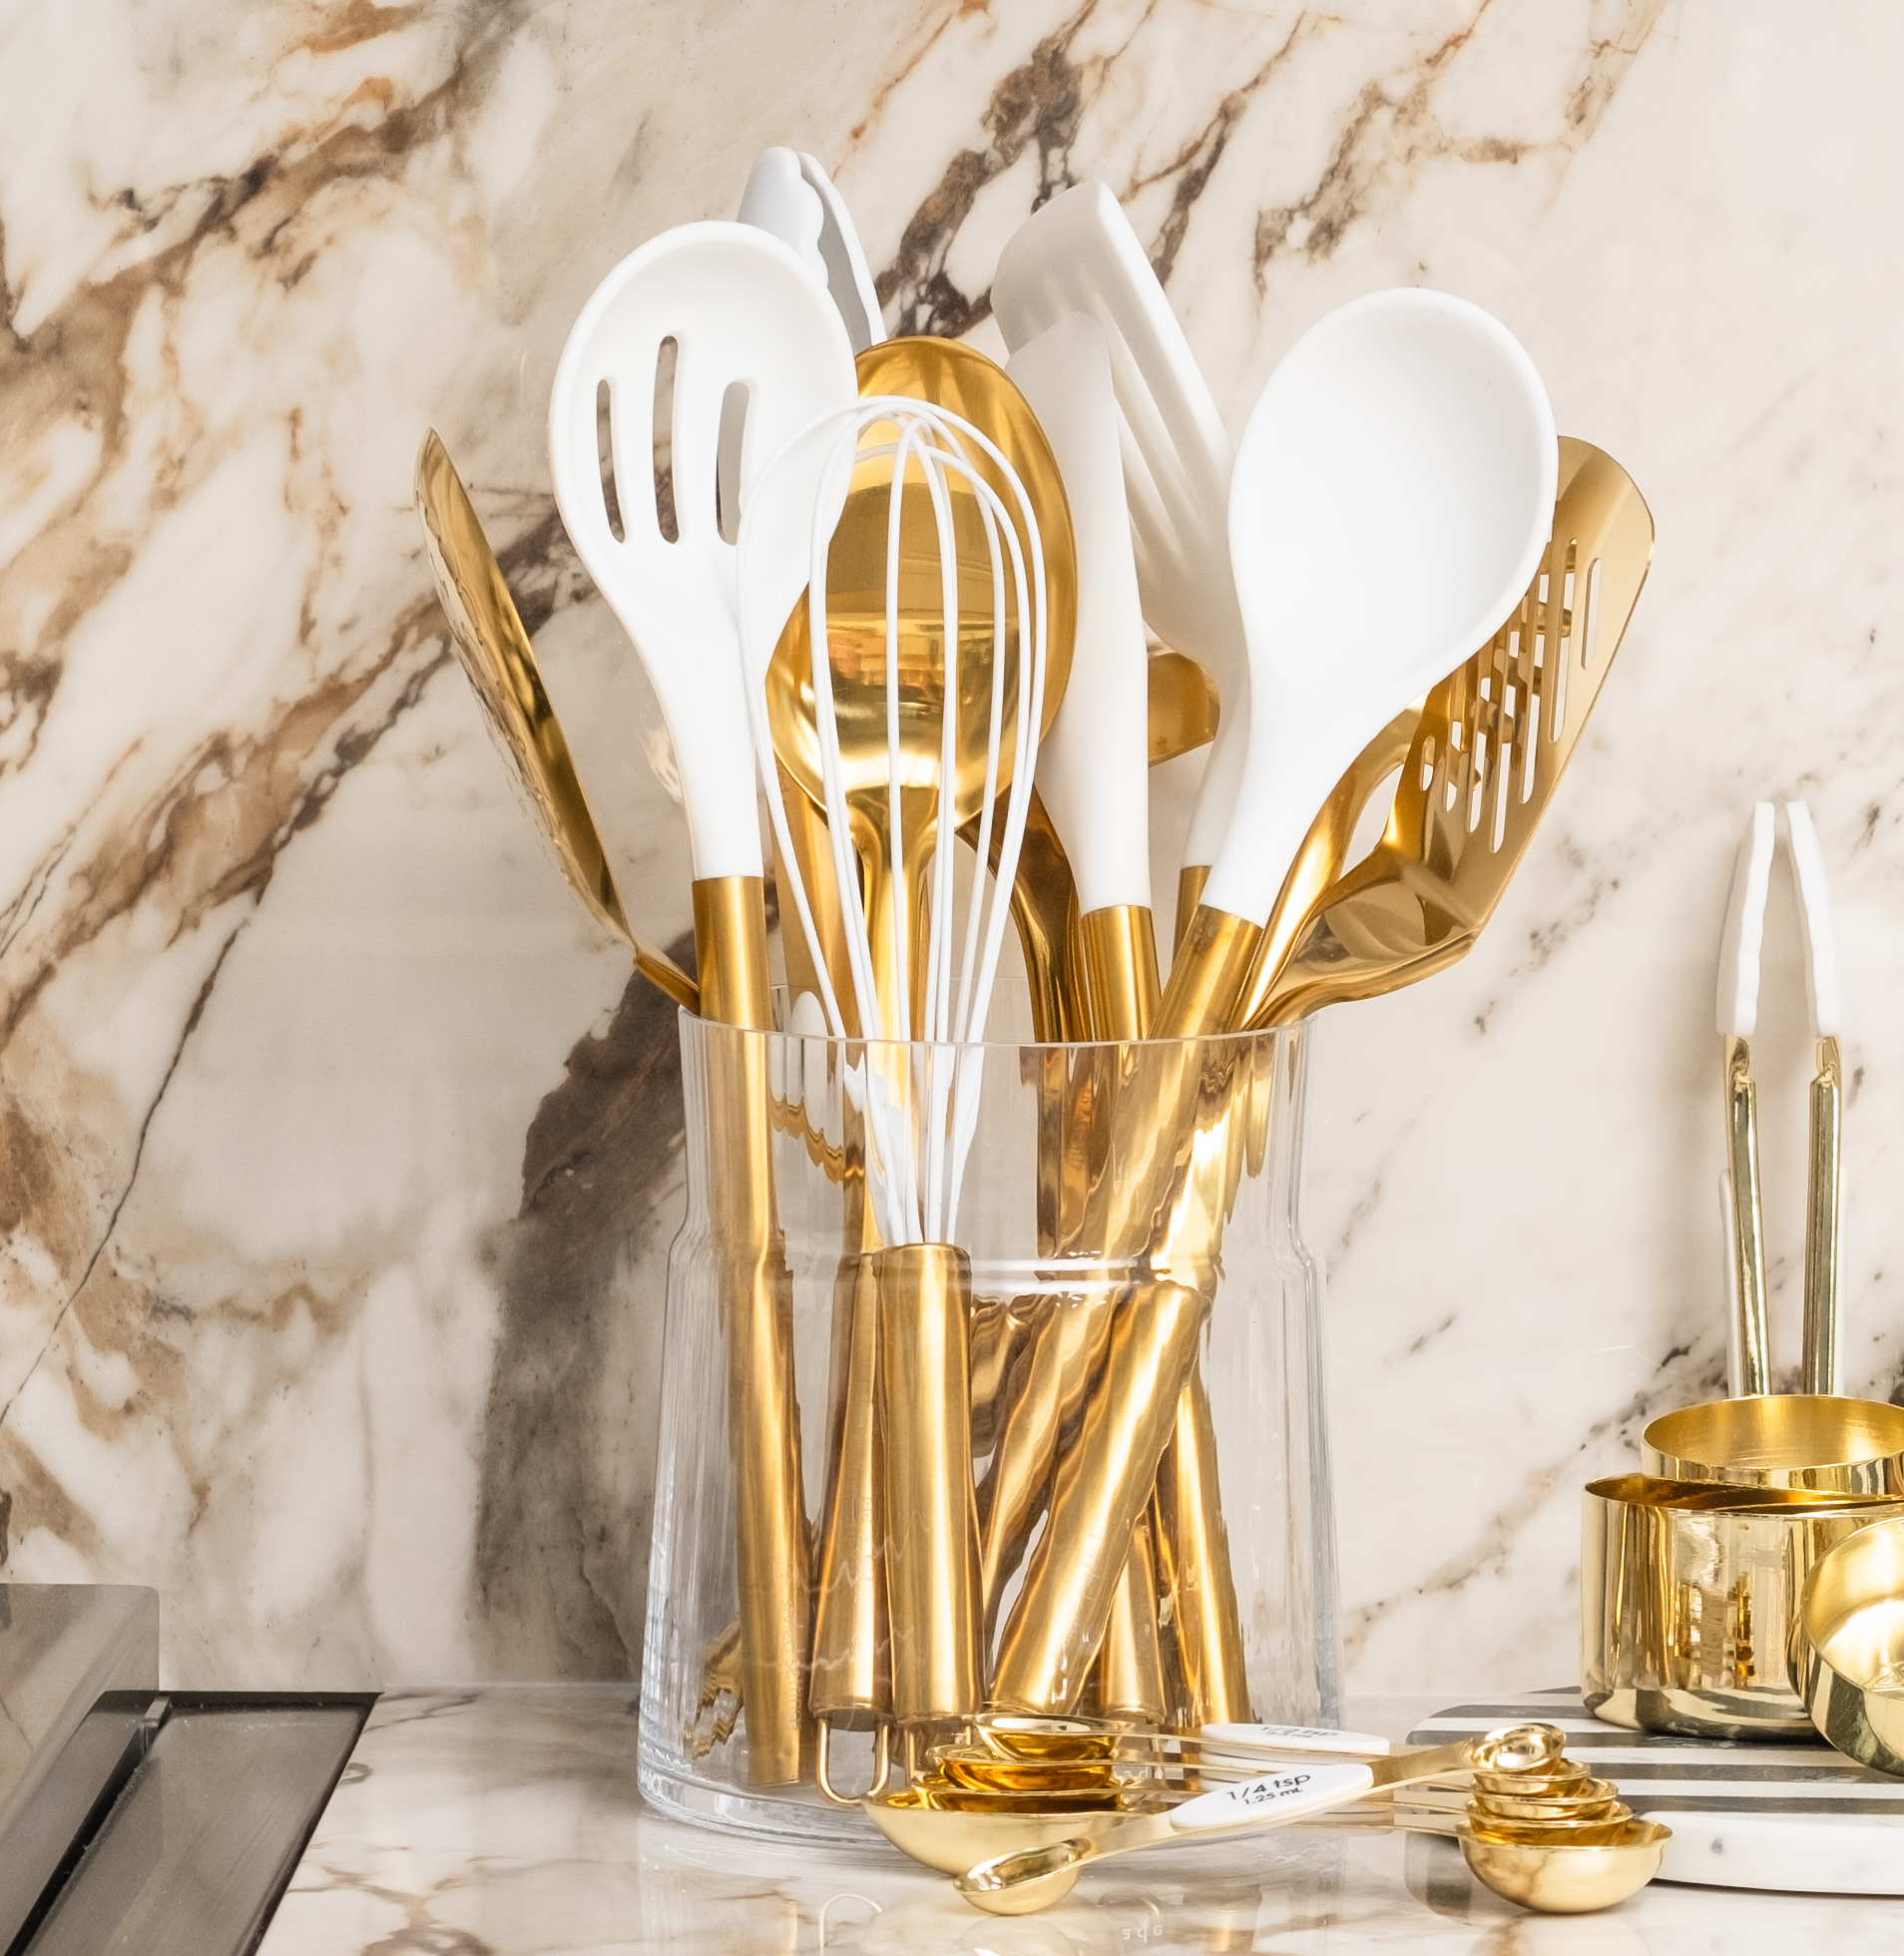 Gold Complete Kitchen Utensils Set